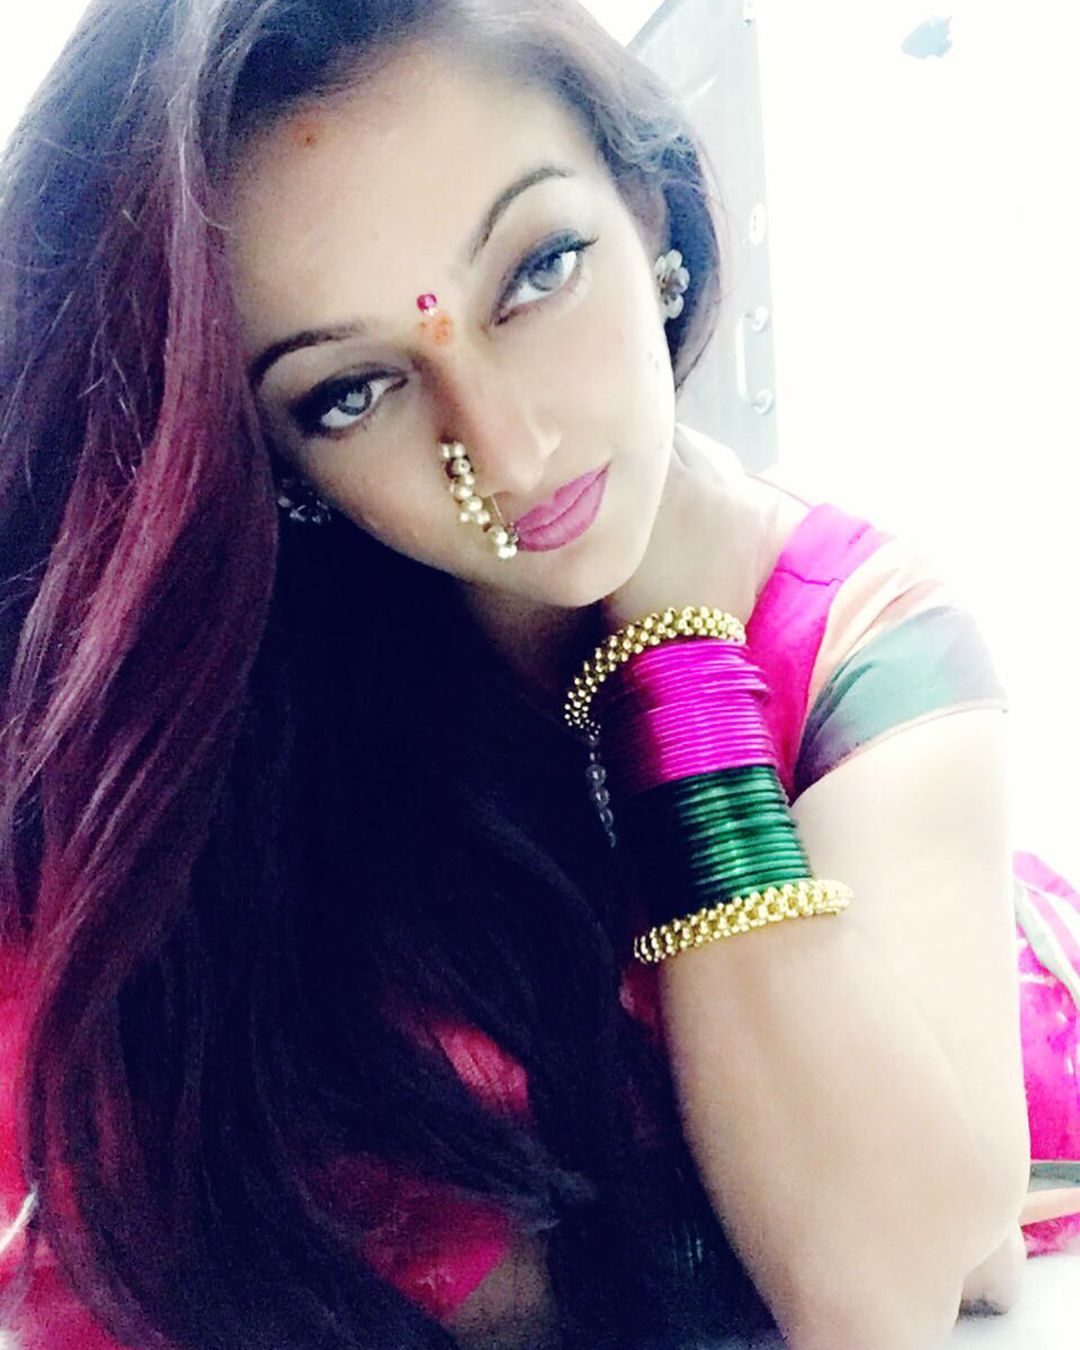 Marathi Actress and Performer Manasi Naik from her Instagram #marathi #actress #manasinaik on #instagram. Long hair models, Model hair, Nose ring